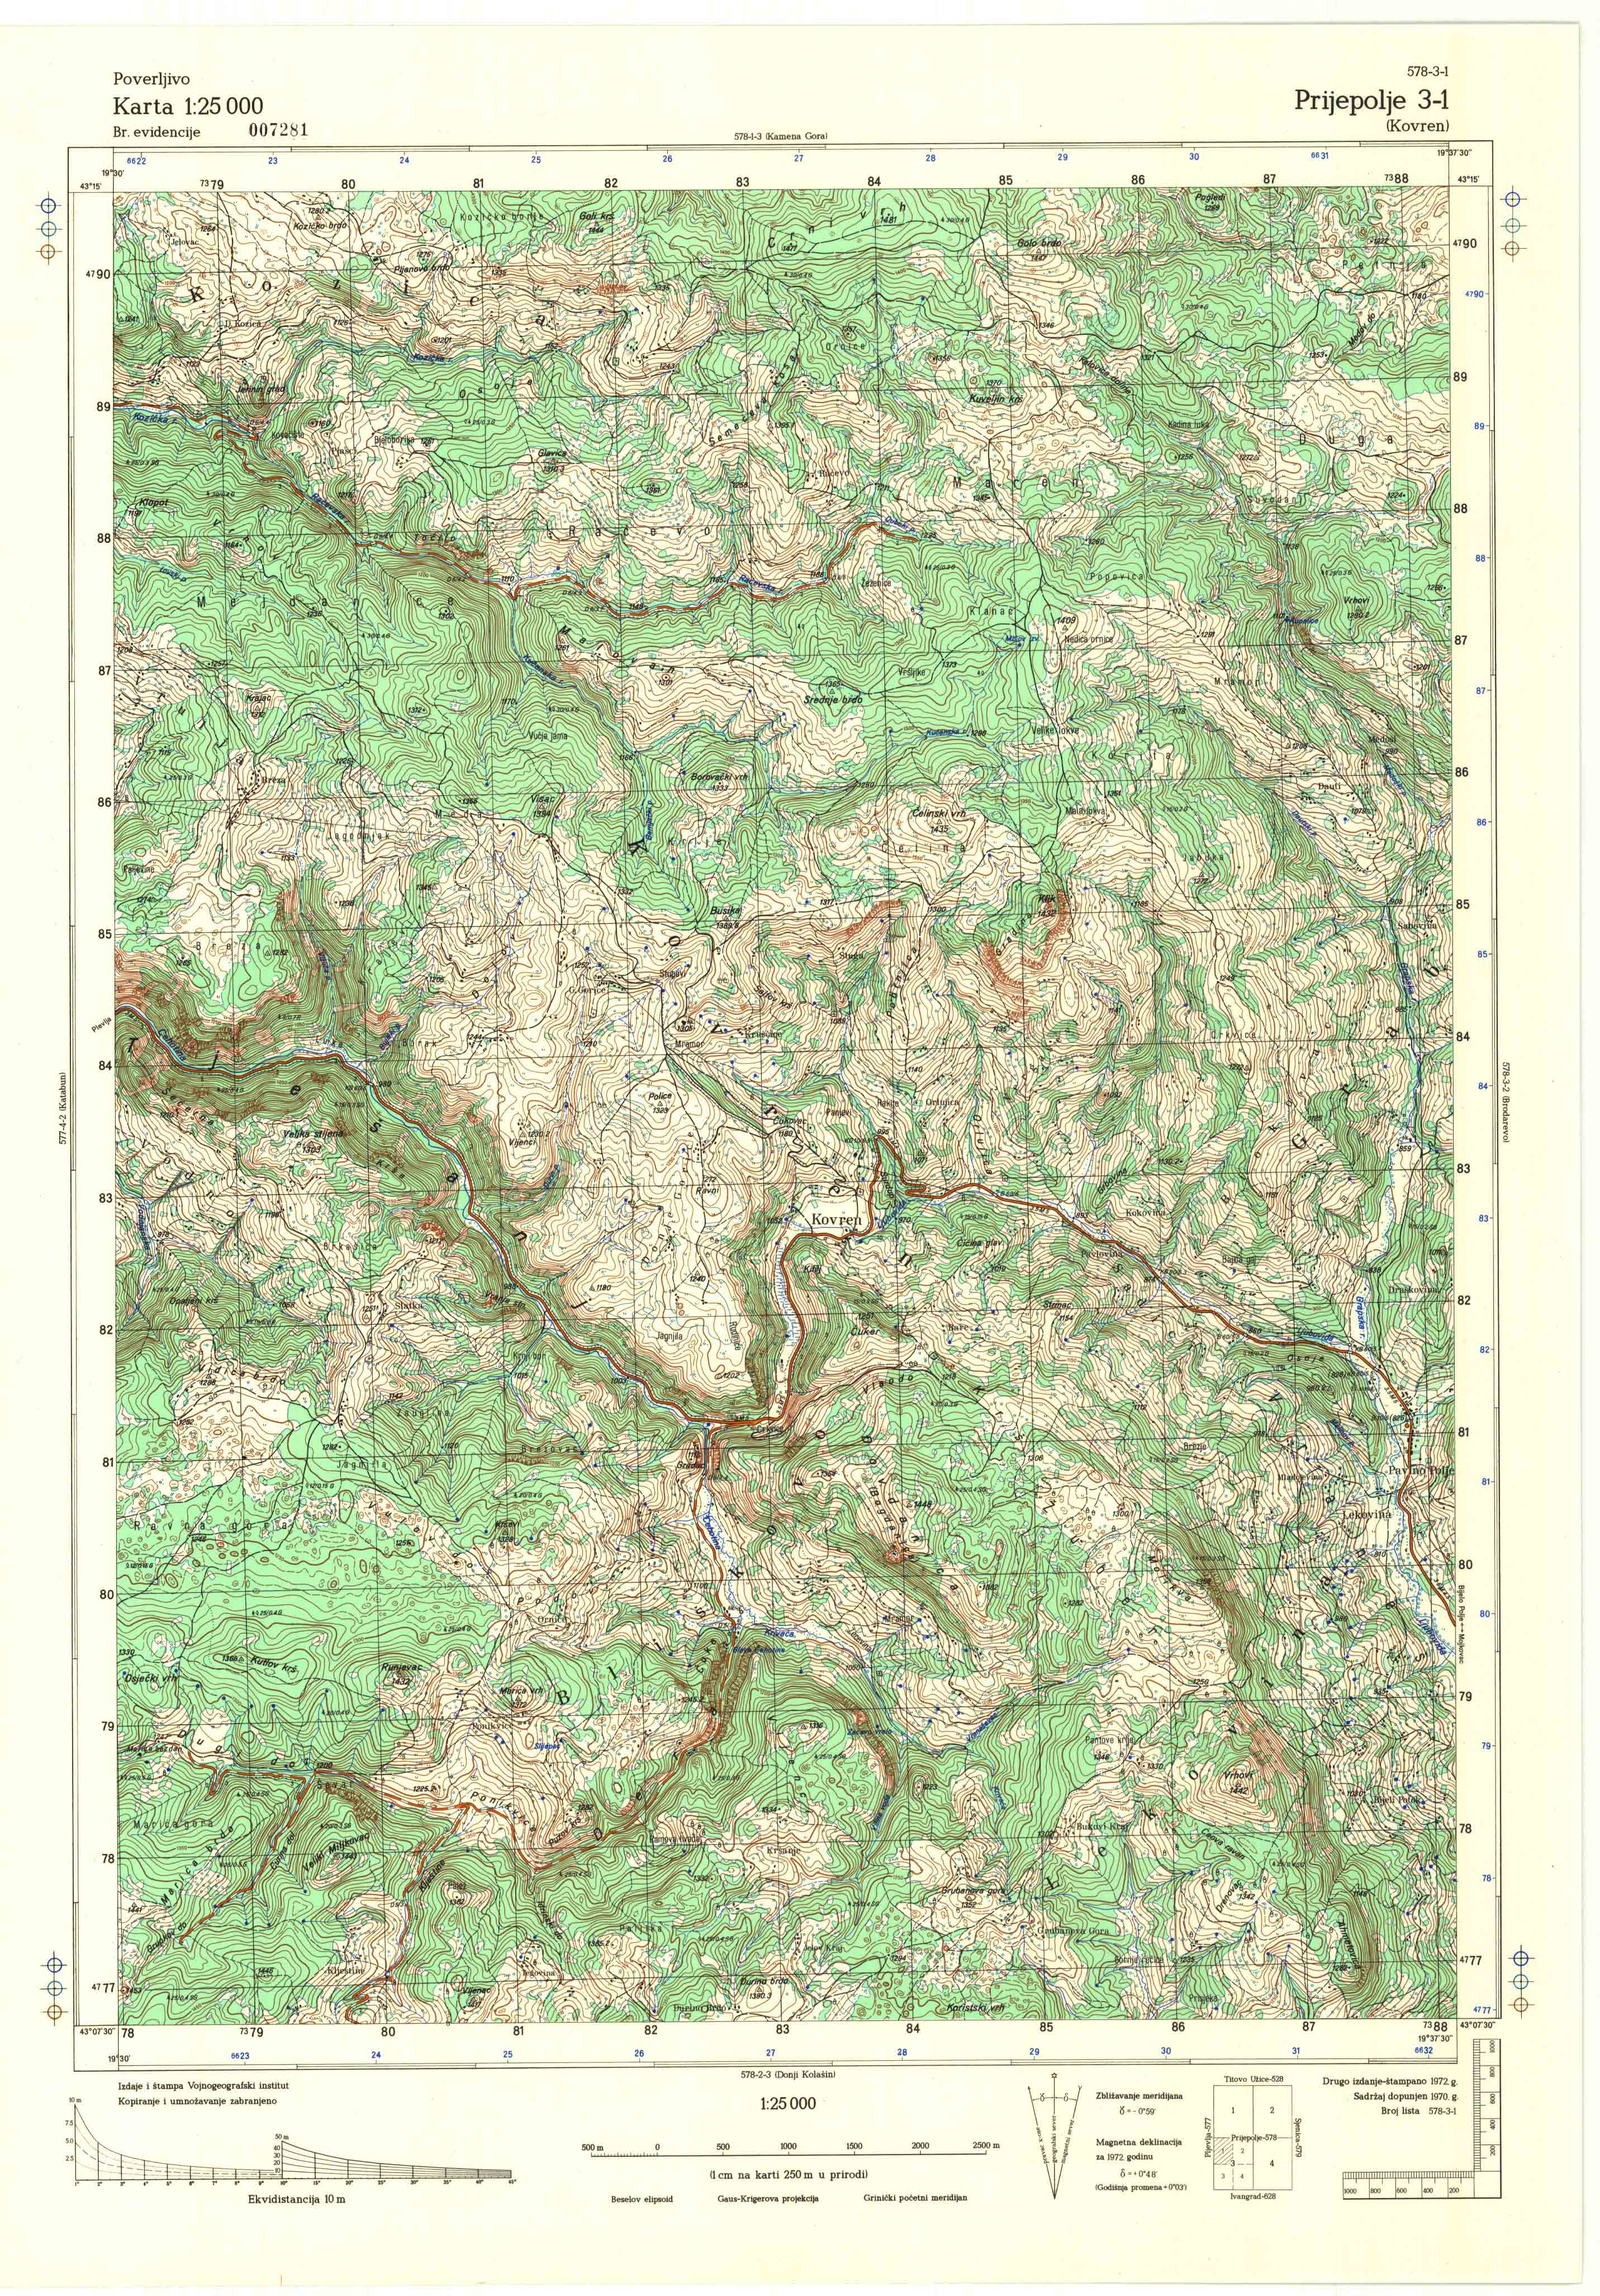  topografska karta srbije 25000 JNA  Prijepolje